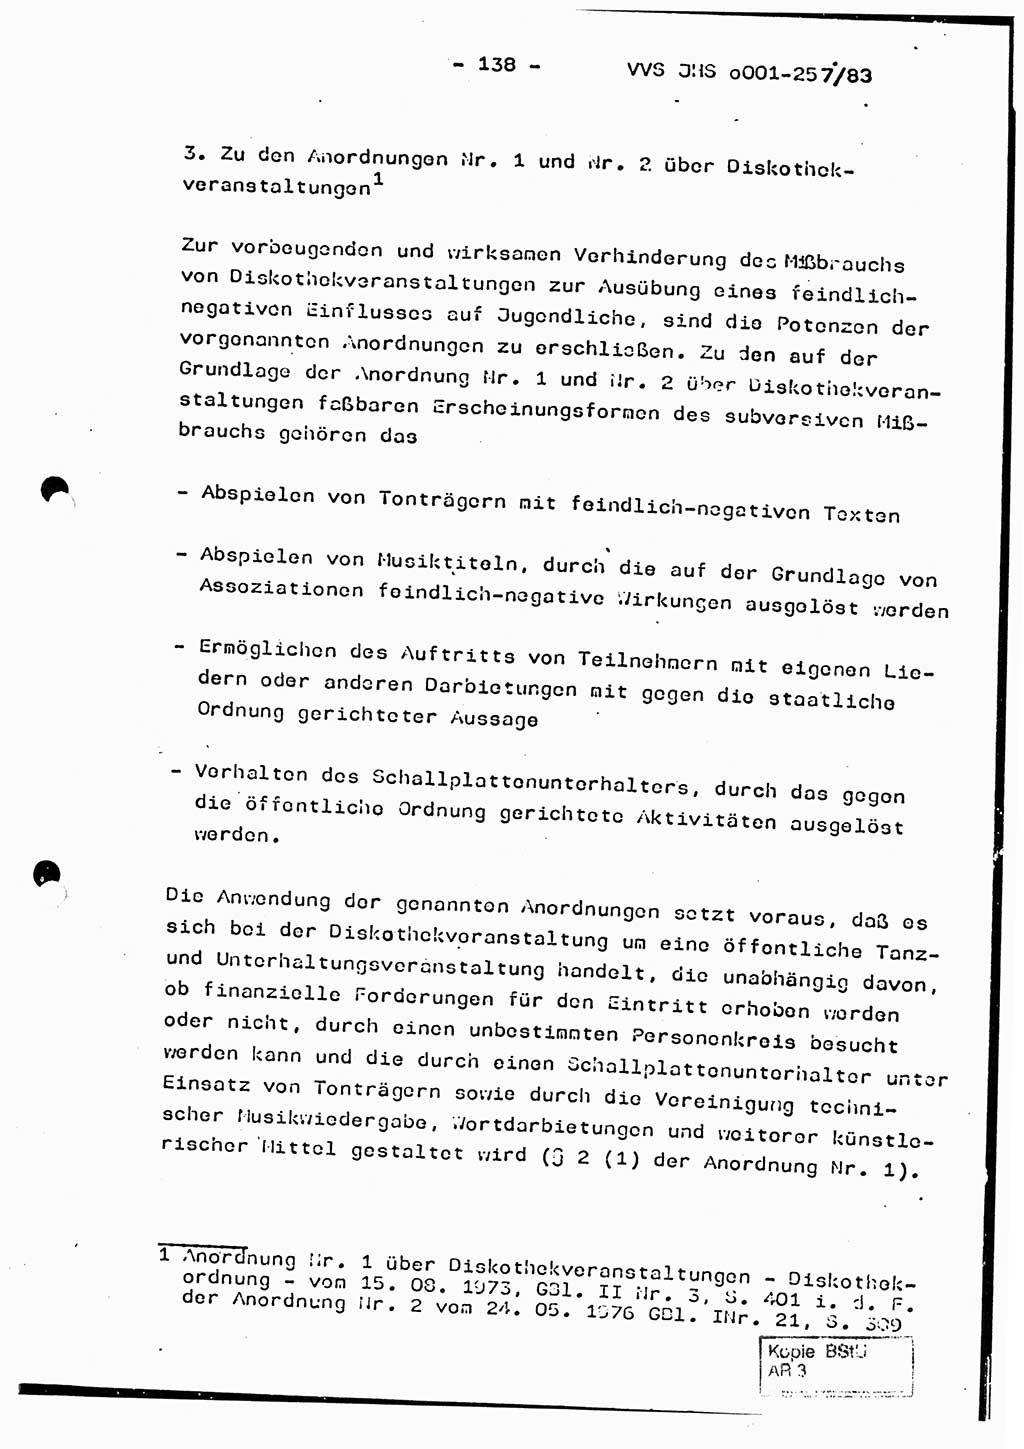 Dissertation, Oberst Helmut Lubas (BV Mdg.), Oberstleutnant Manfred Eschberger (HA IX), Oberleutnant Hans-Jürgen Ludwig (JHS), Ministerium für Staatssicherheit (MfS) [Deutsche Demokratische Republik (DDR)], Juristische Hochschule (JHS), Vertrauliche Verschlußsache (VVS) o001-257/83, Potsdam 1983, Seite 138 (Diss. MfS DDR JHS VVS o001-257/83 1983, S. 138)